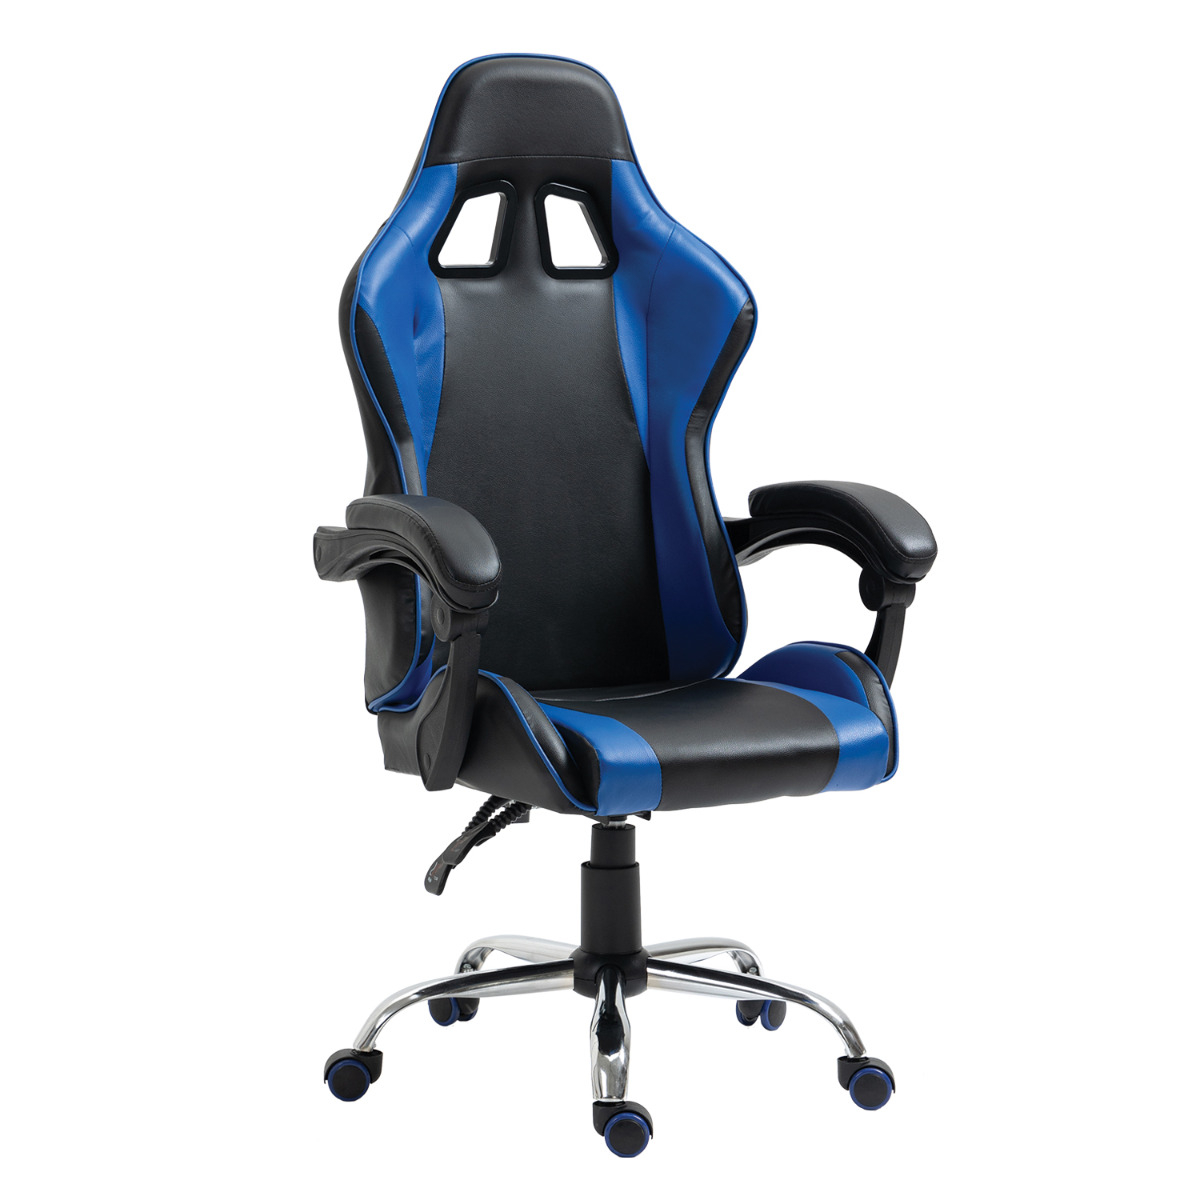 Καρέκλα Γραφείου Gaming BRAY Μπλε/Μαύρο PVC 67x50x120-127cm